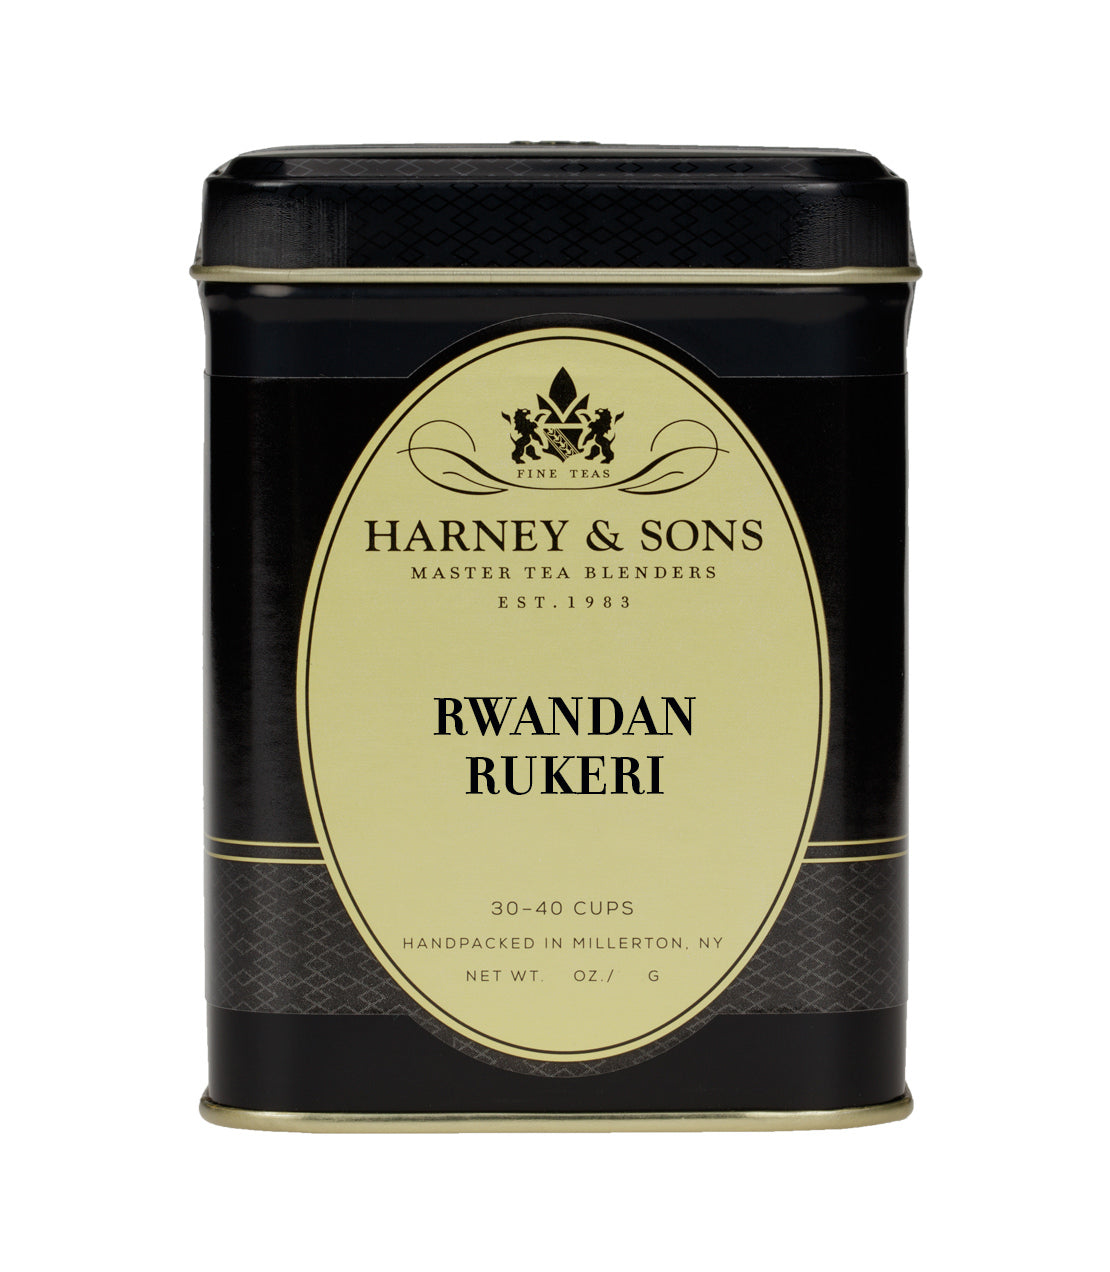 Rwandan Rukeri - Loose 4 oz. Tin - Harney & Sons Fine Teas